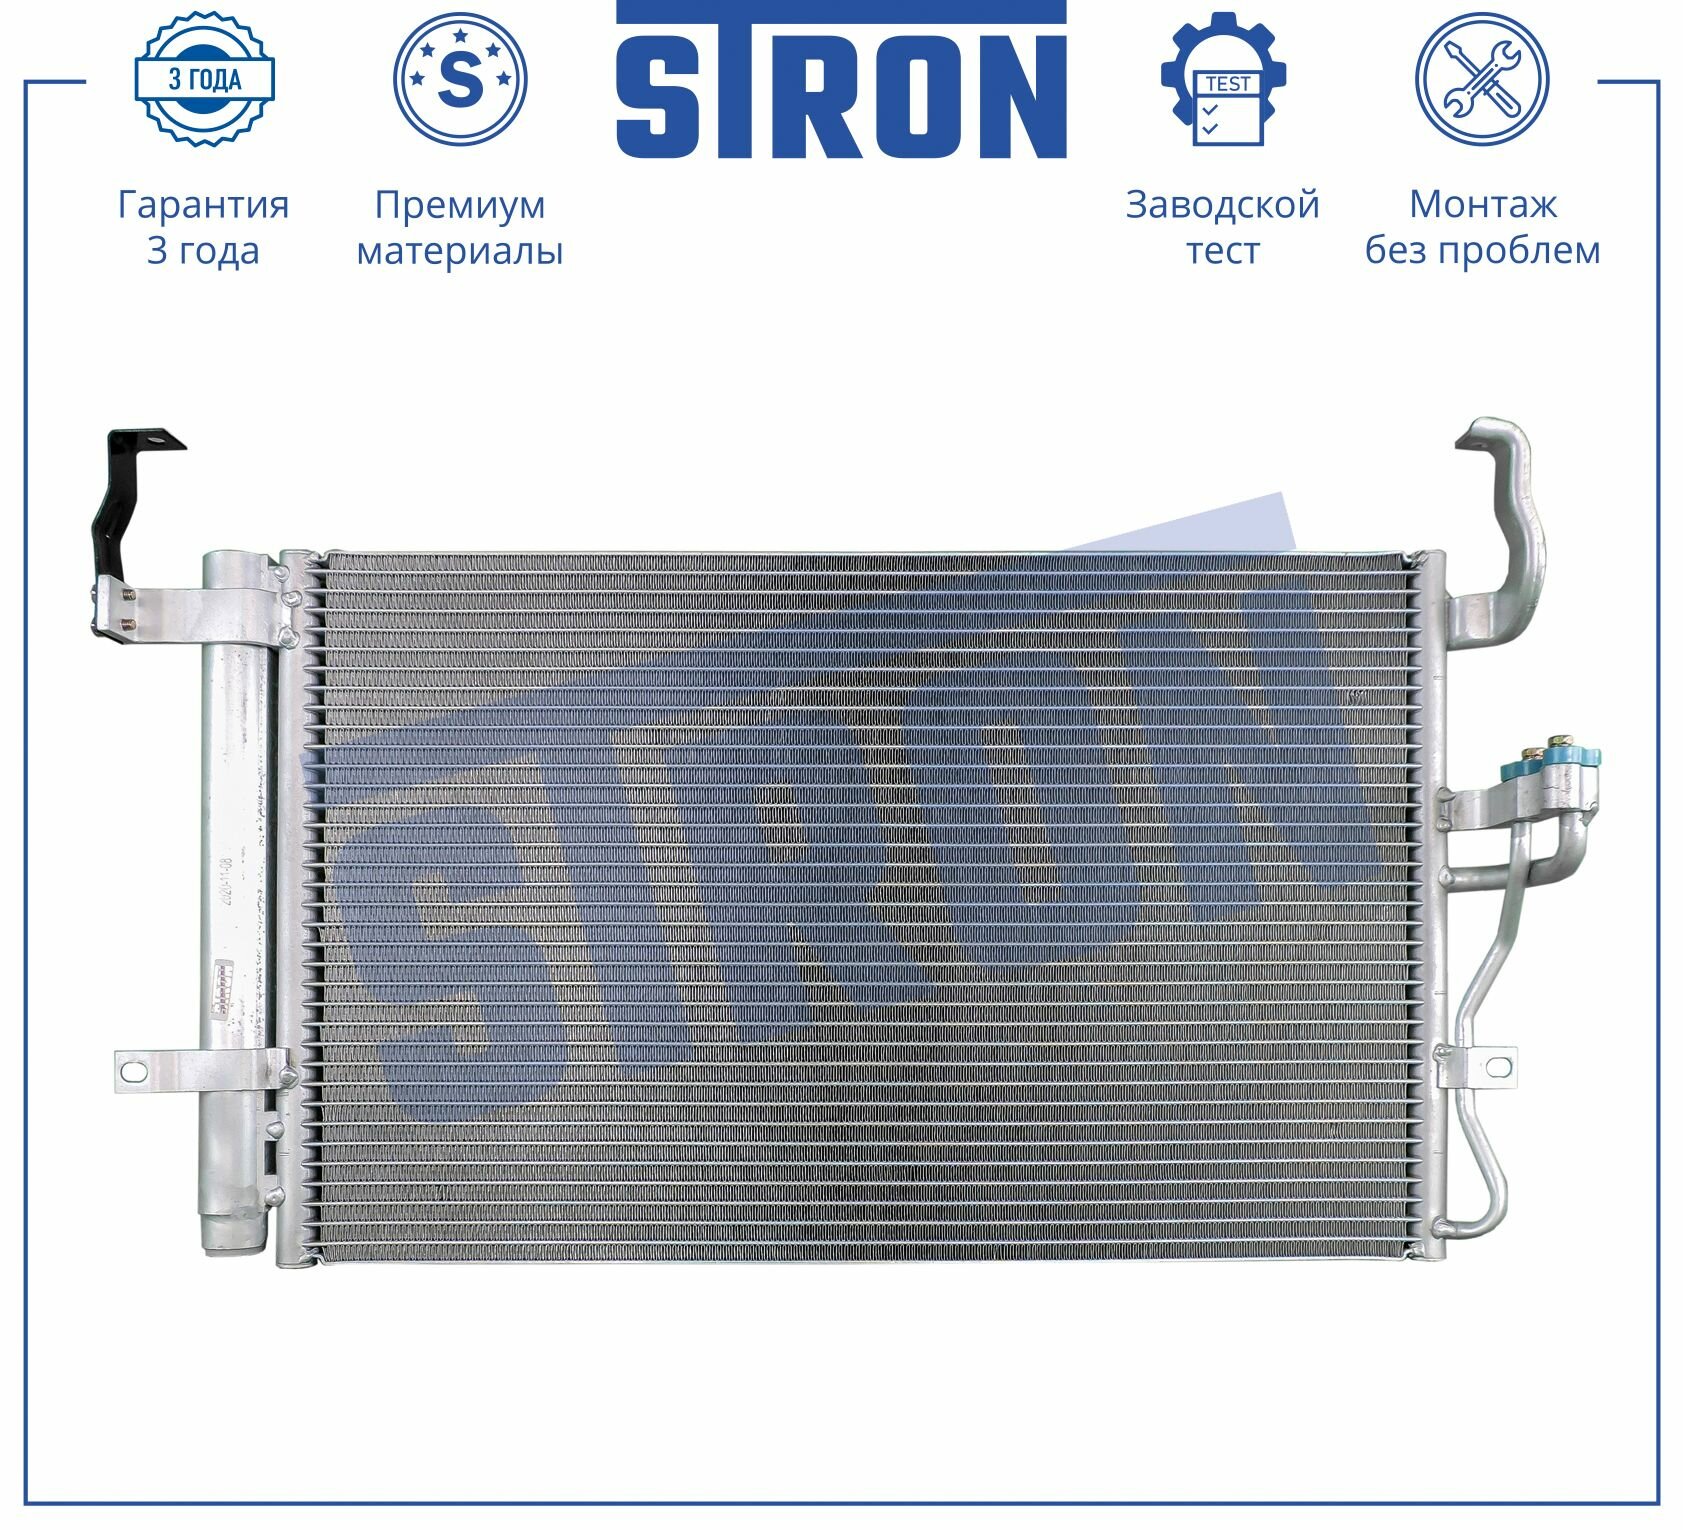 Радиатор кондиционера STRON для автомобиля HYUNDAI STRON арт. STC0060